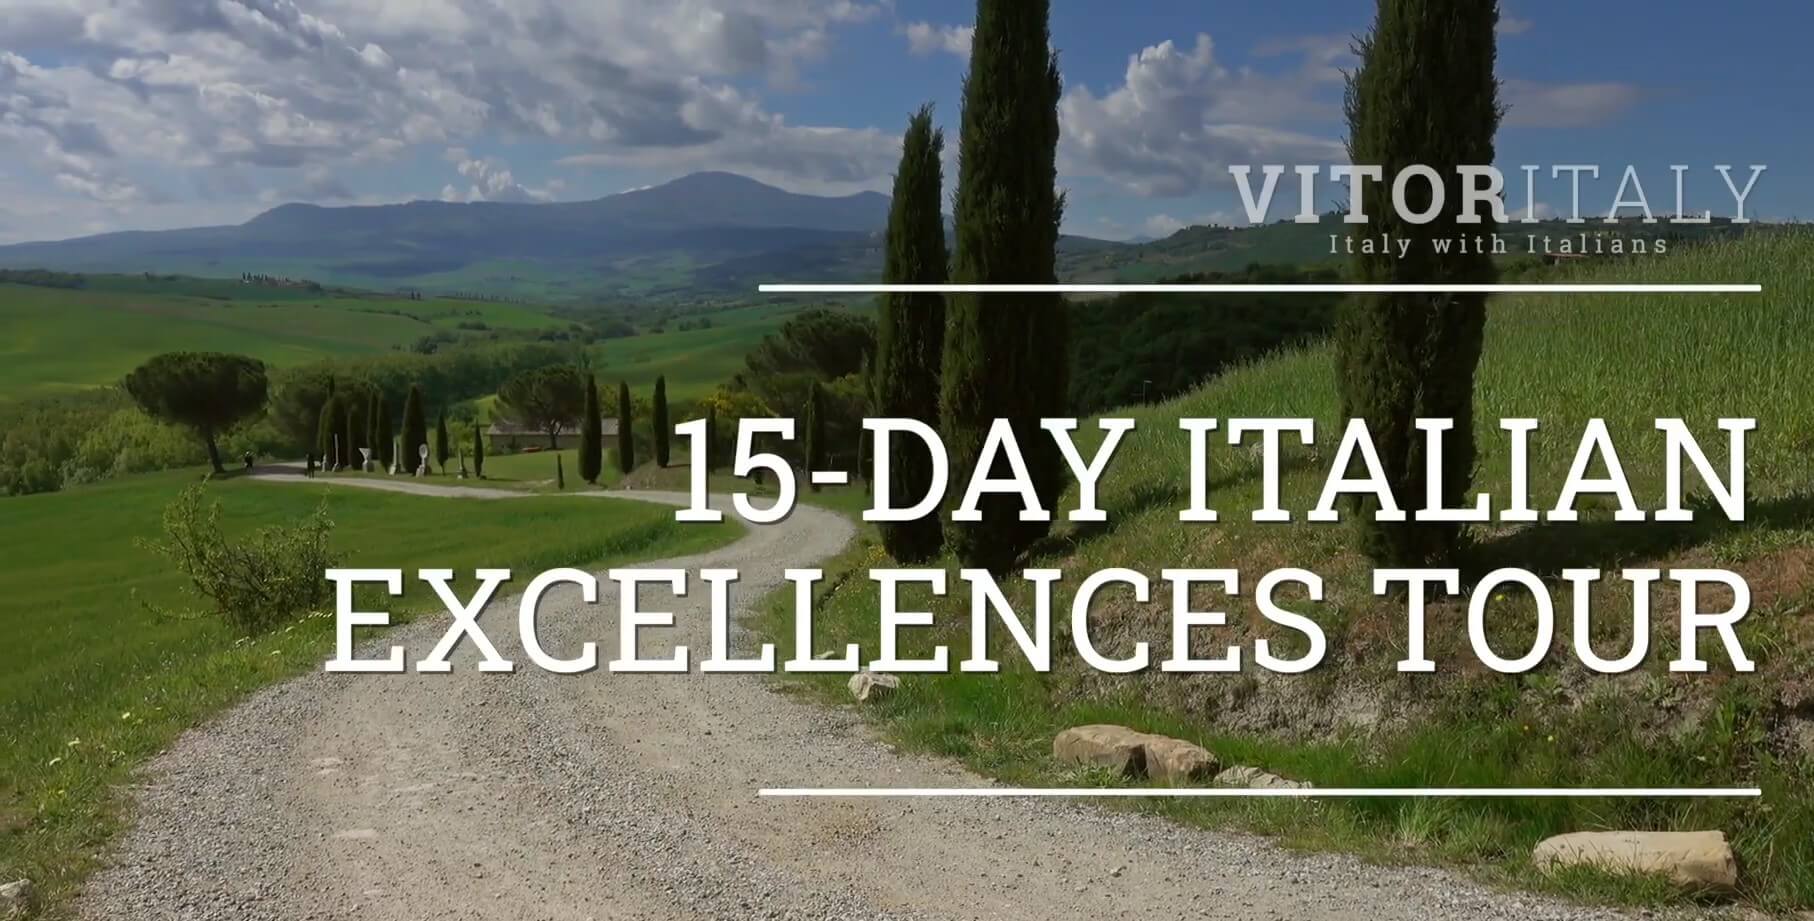 15-DAY ITALIAN EXCELLENCES TOUR